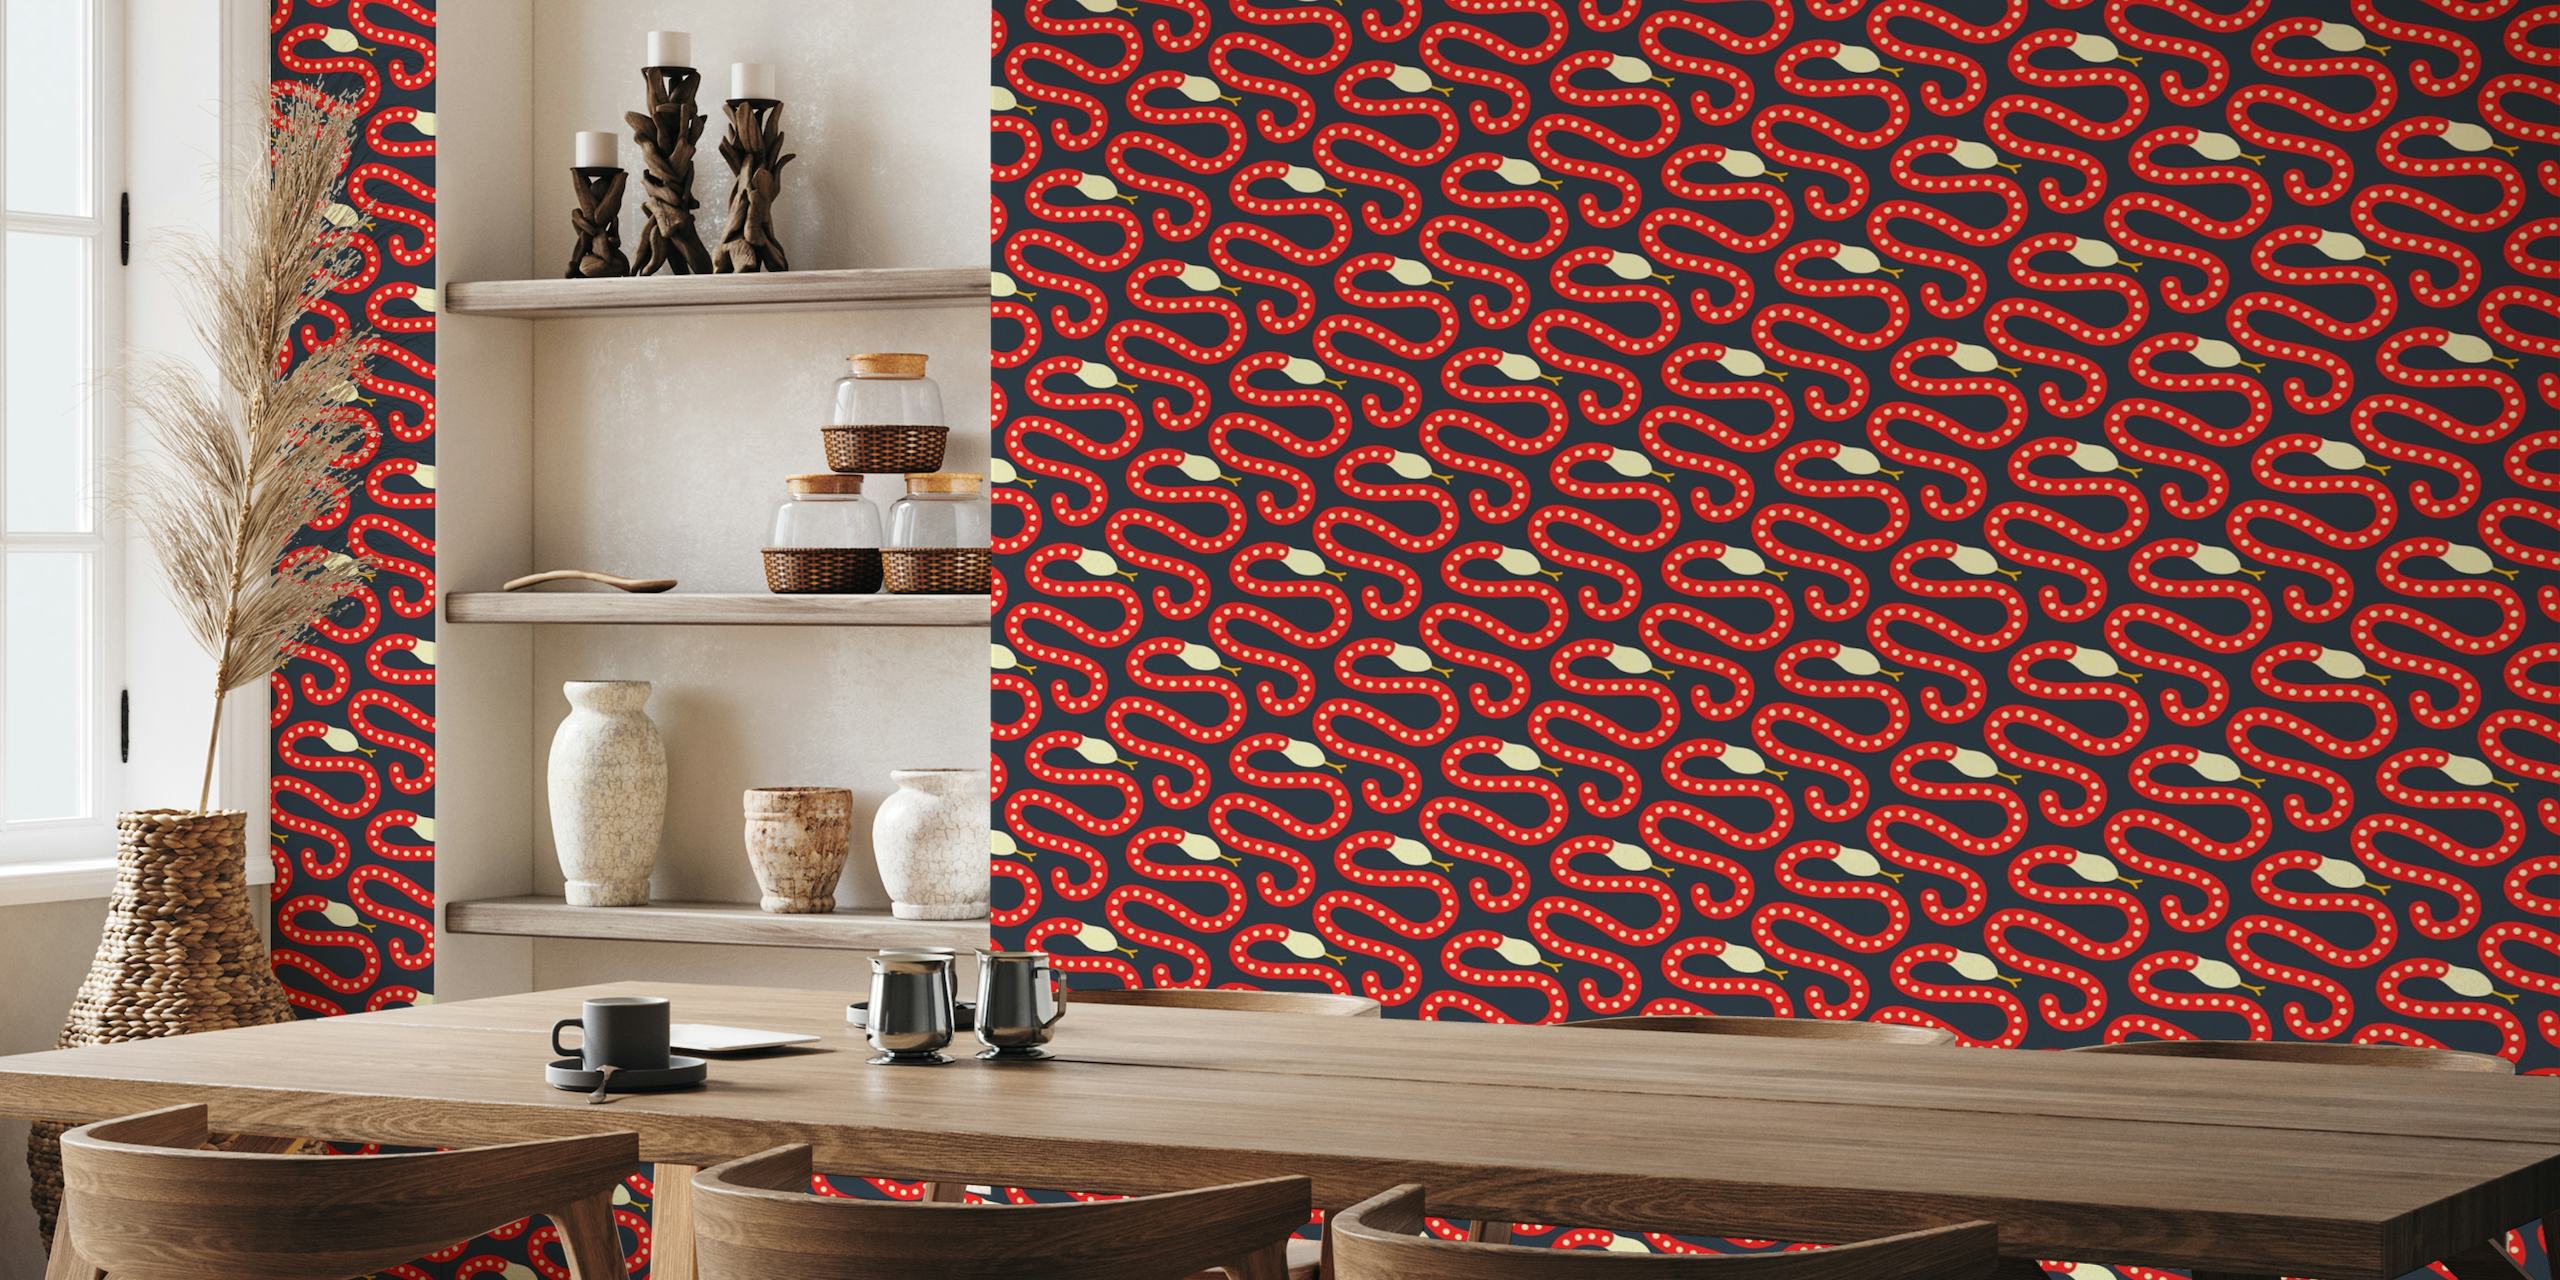 2841 C - dark red snakes wallpaper